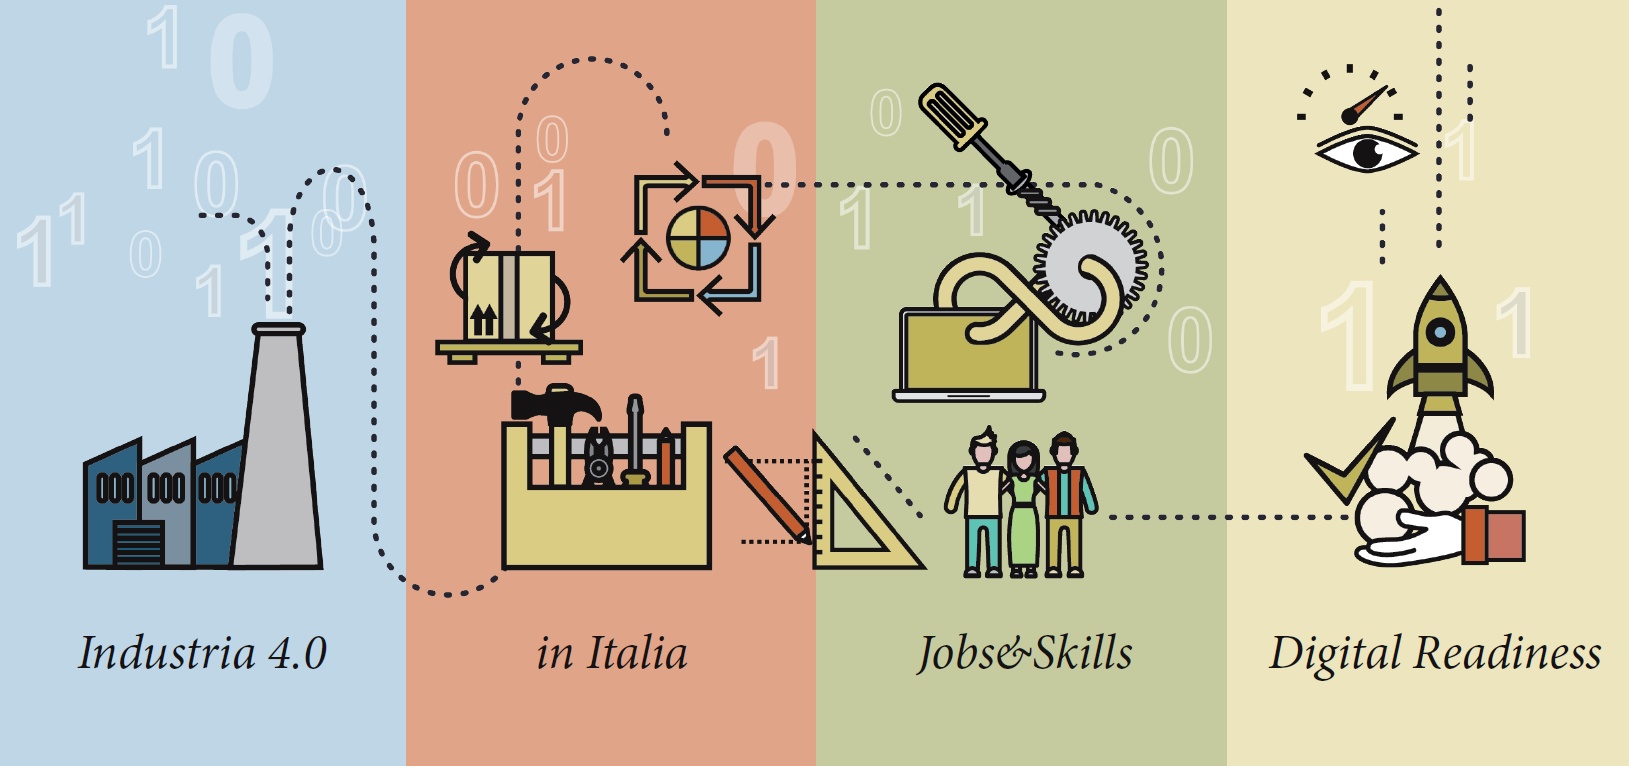 IoT e Industria 4.0: in Italia vale 1,7 miliardi di euro